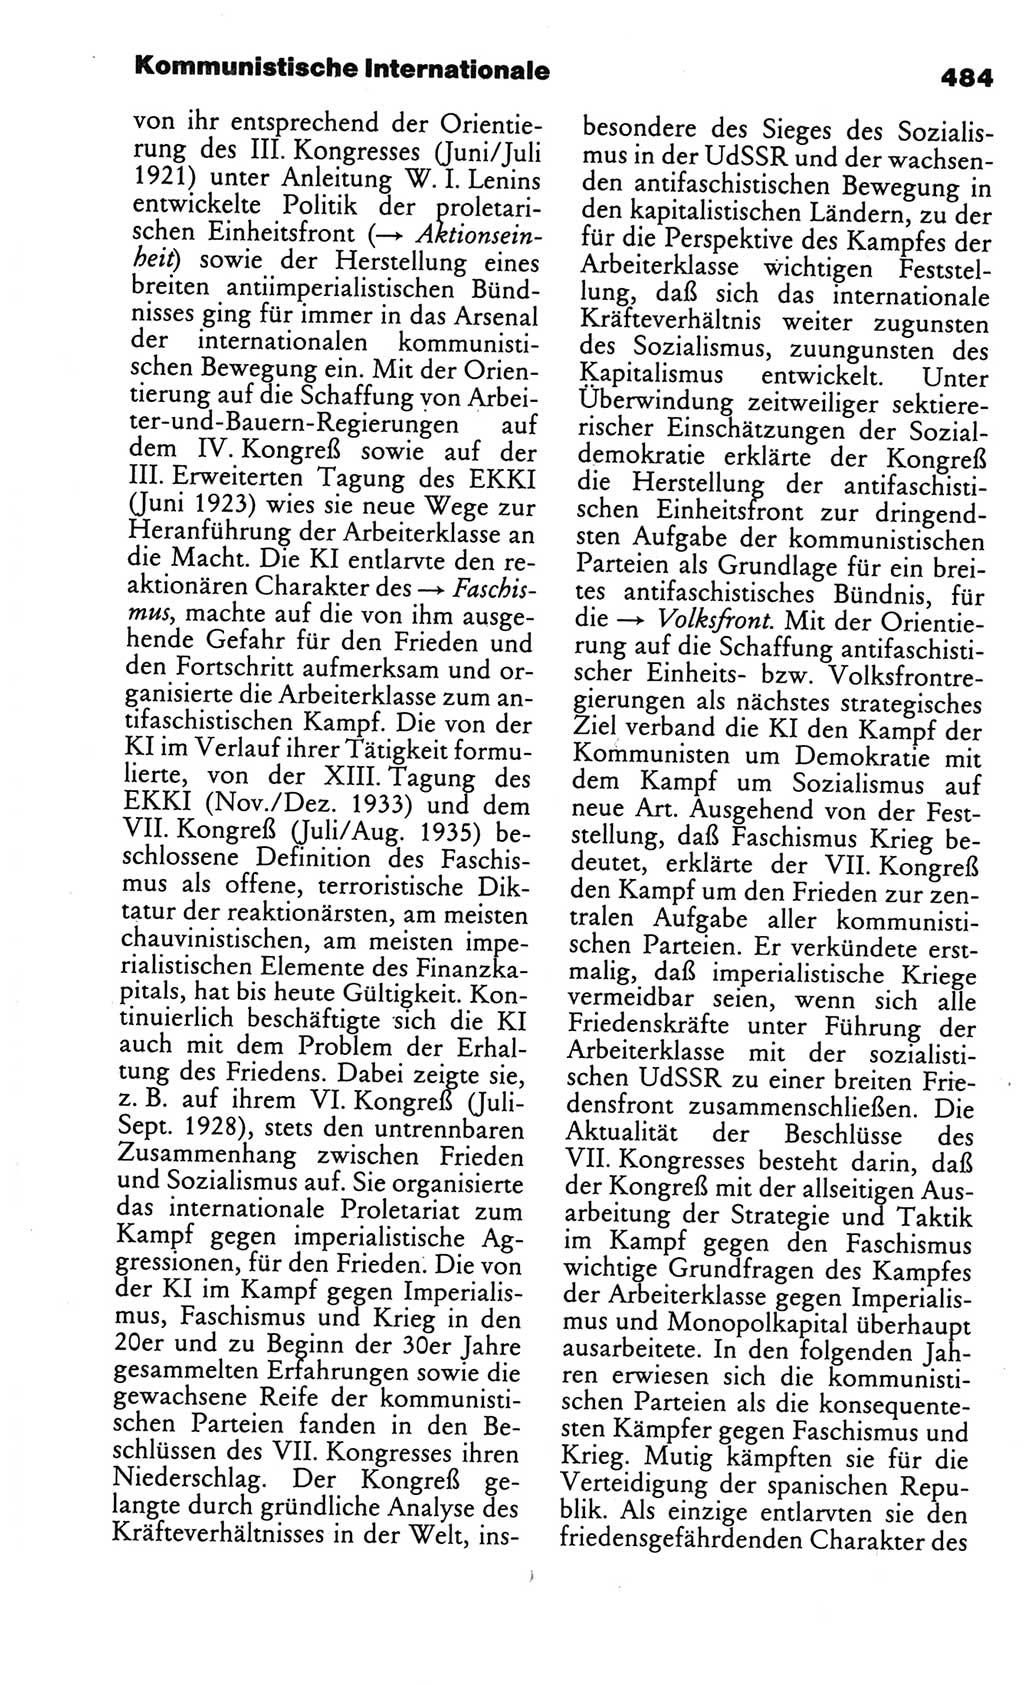 Kleines politisches Wörterbuch [Deutsche Demokratische Republik (DDR)] 1986, Seite 484 (Kl. pol. Wb. DDR 1986, S. 484)